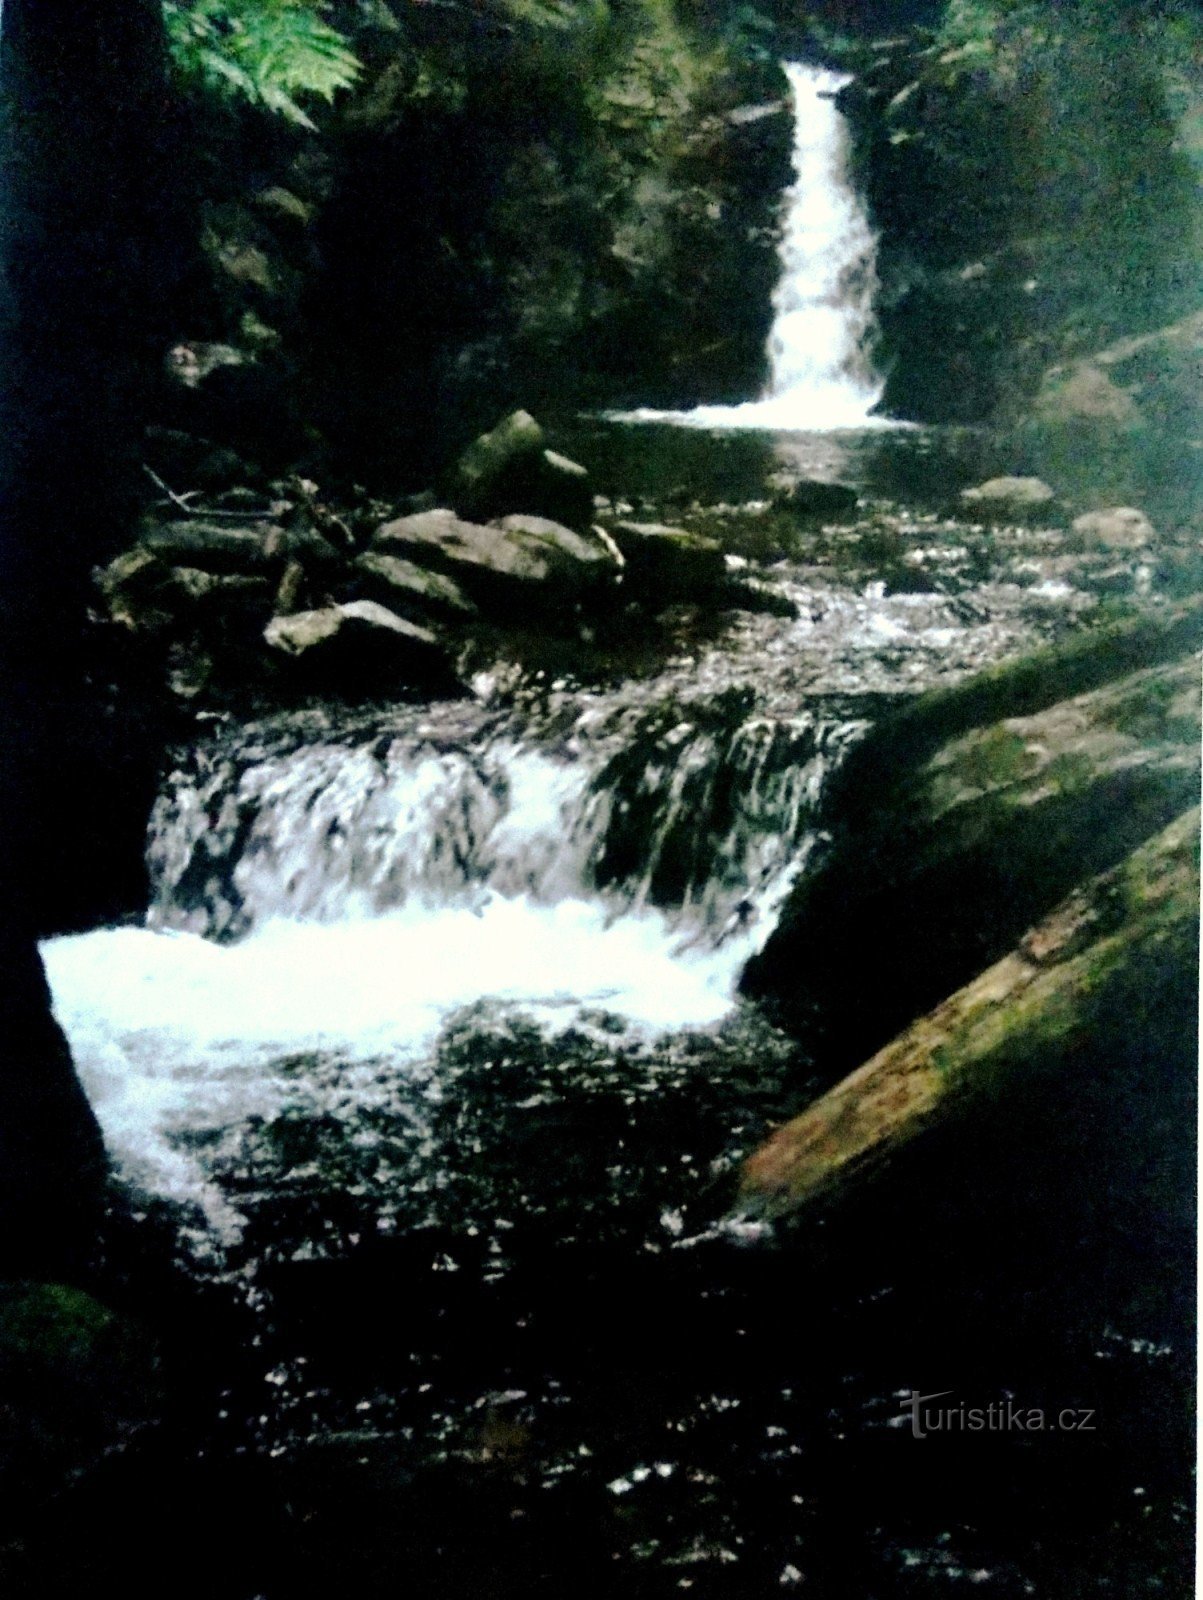 Till de romantiska Nýzner-vattenfallen i Rychleb-bergen